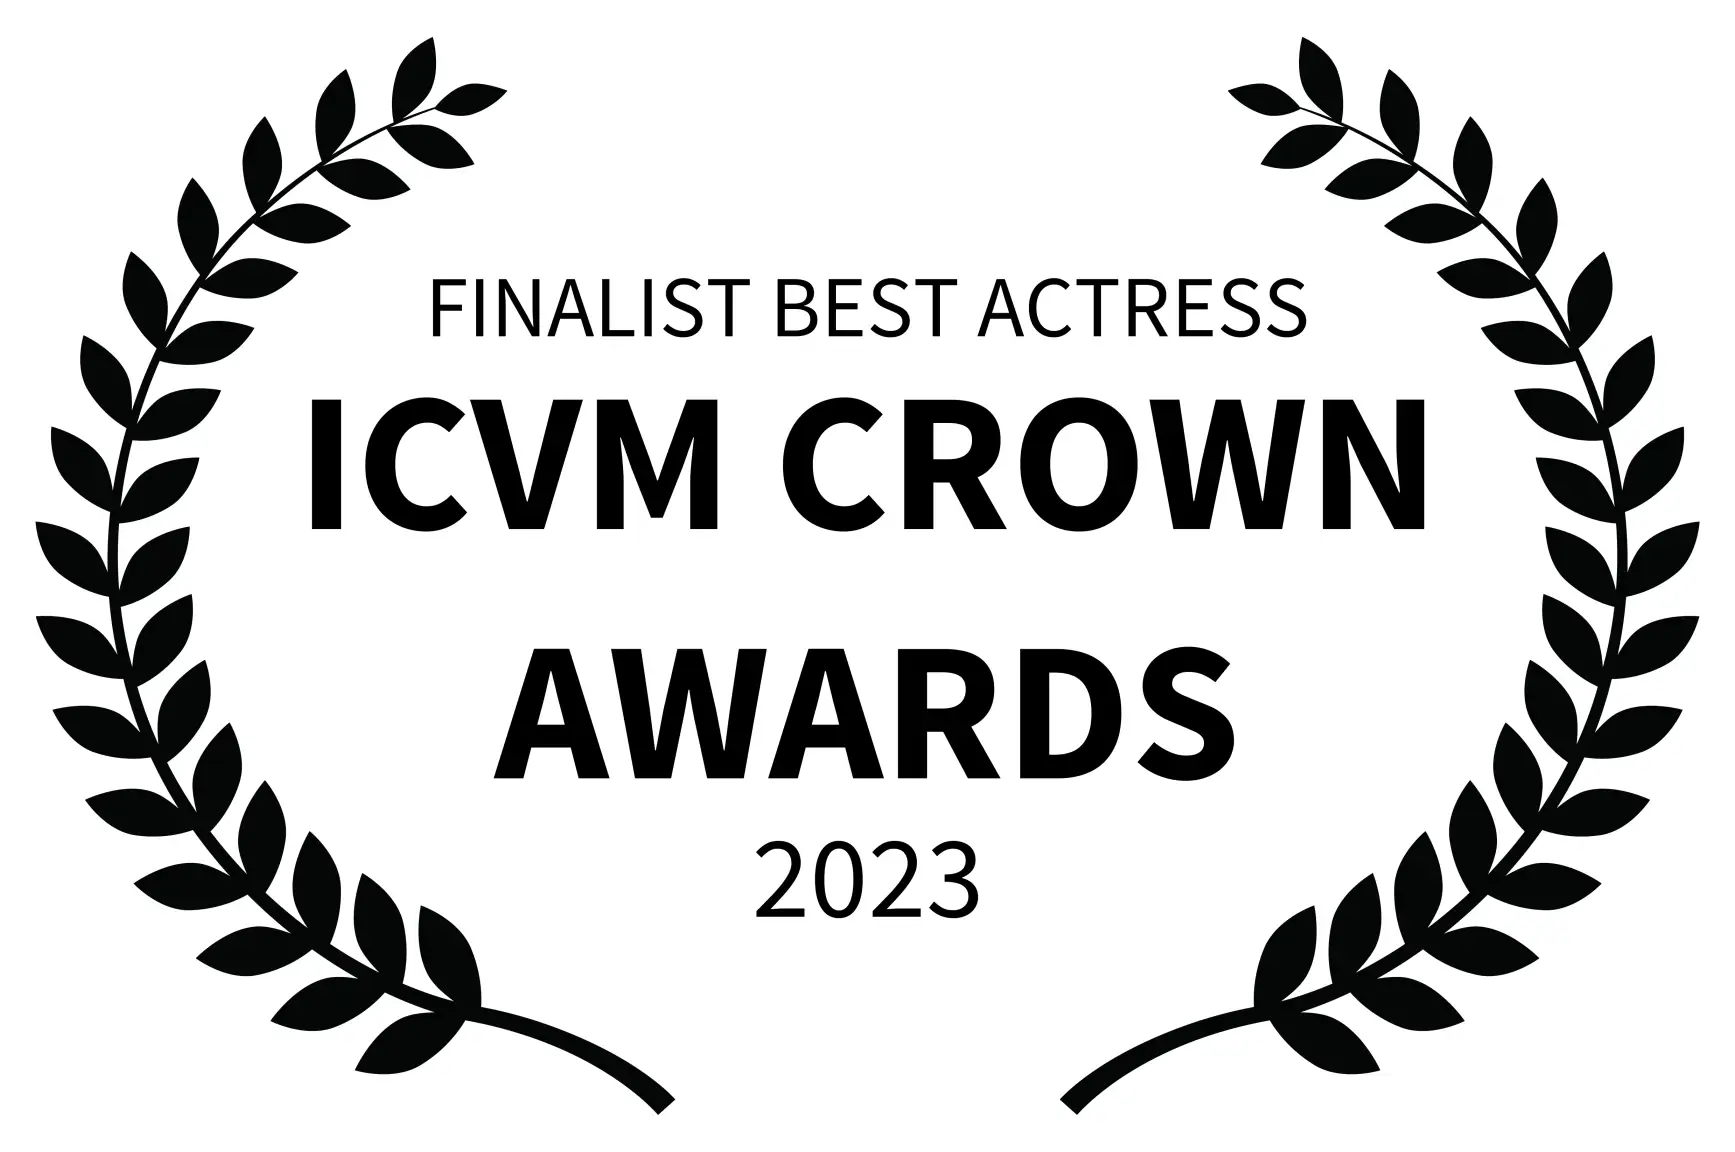 BEST ACTRESS - ICVM CROWN AWARDS - 2023